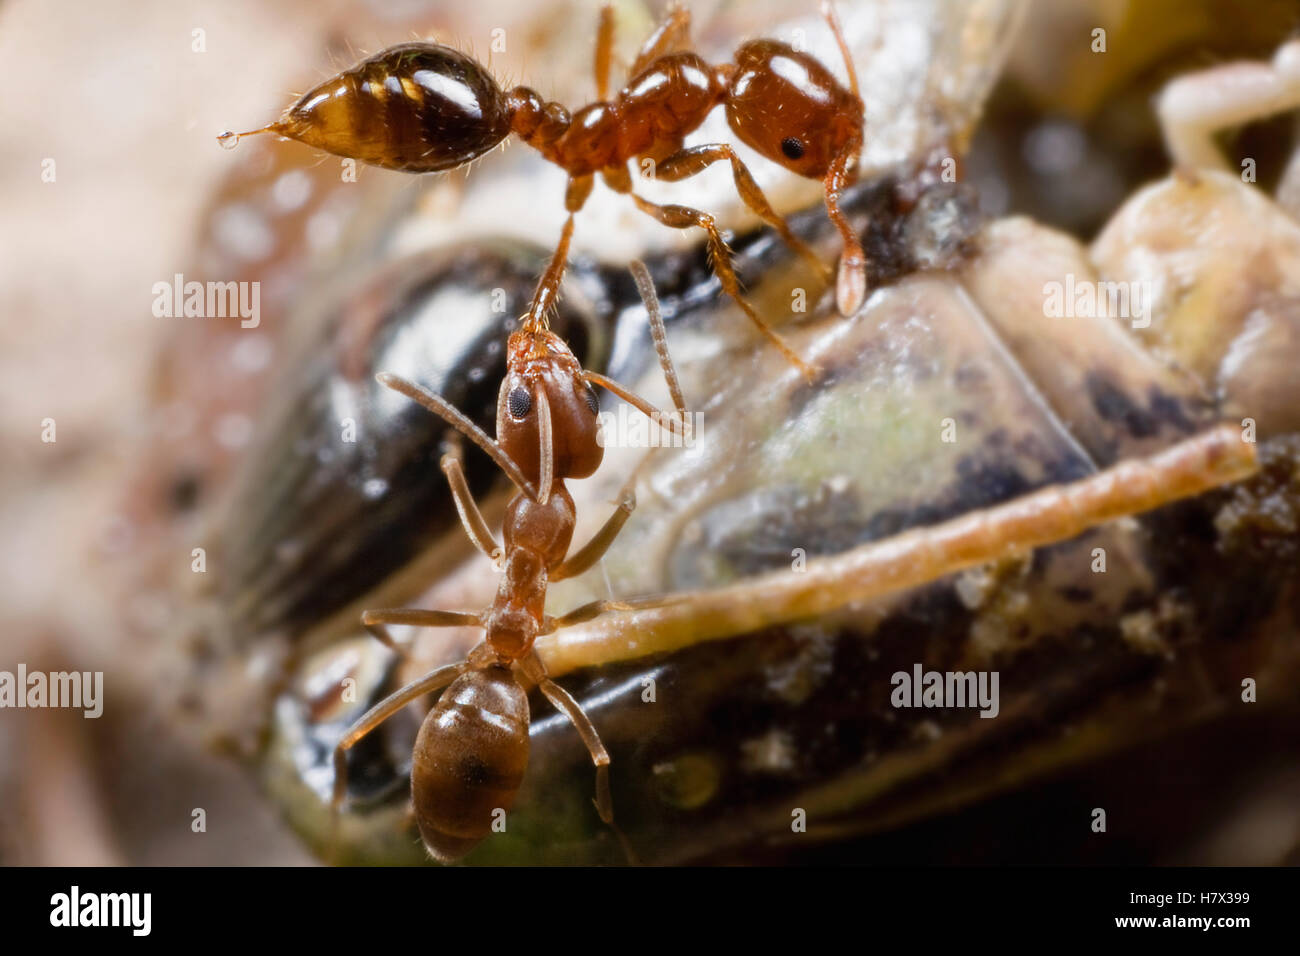 La Hormiga argentina (Linepithema humile) agarrando la pierna de una hormiga en una lucha por el control de los muertos están de pie grasshopper Foto de stock